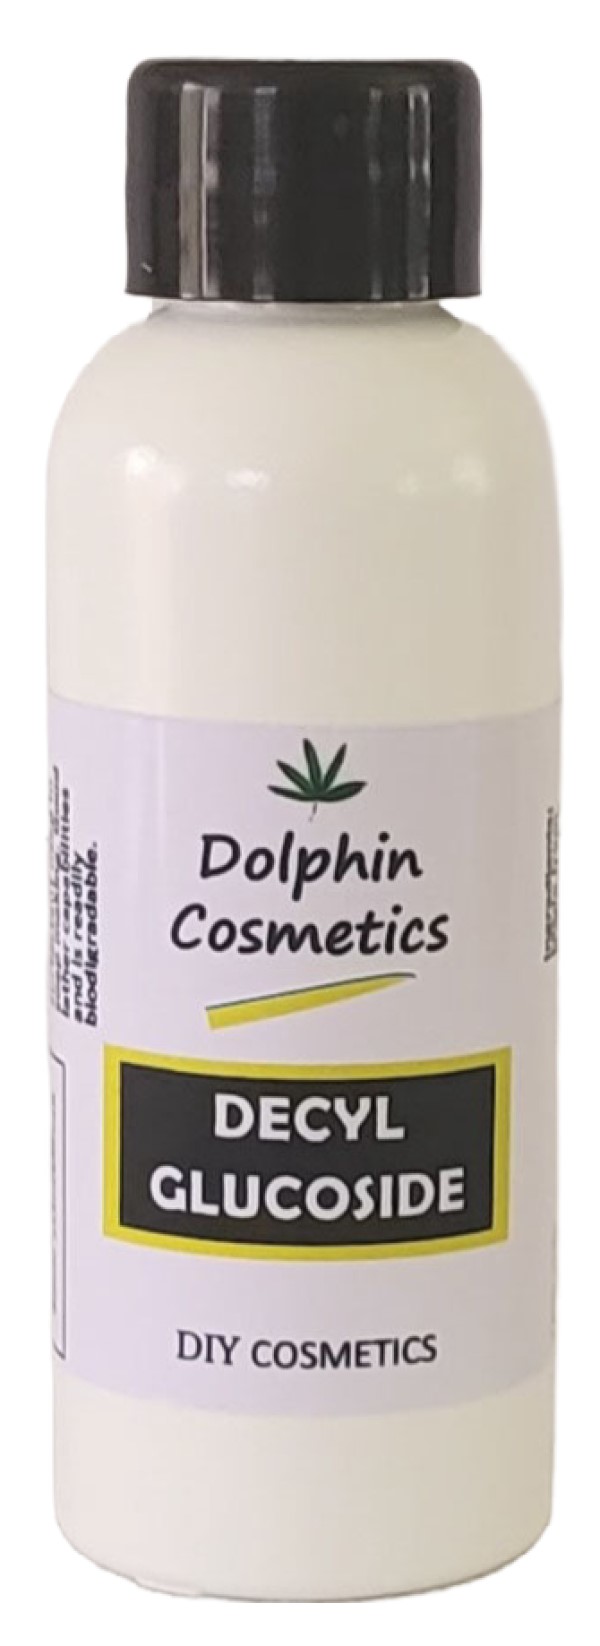 dolphin-cosmetics-decyl-glucoside-ac2000